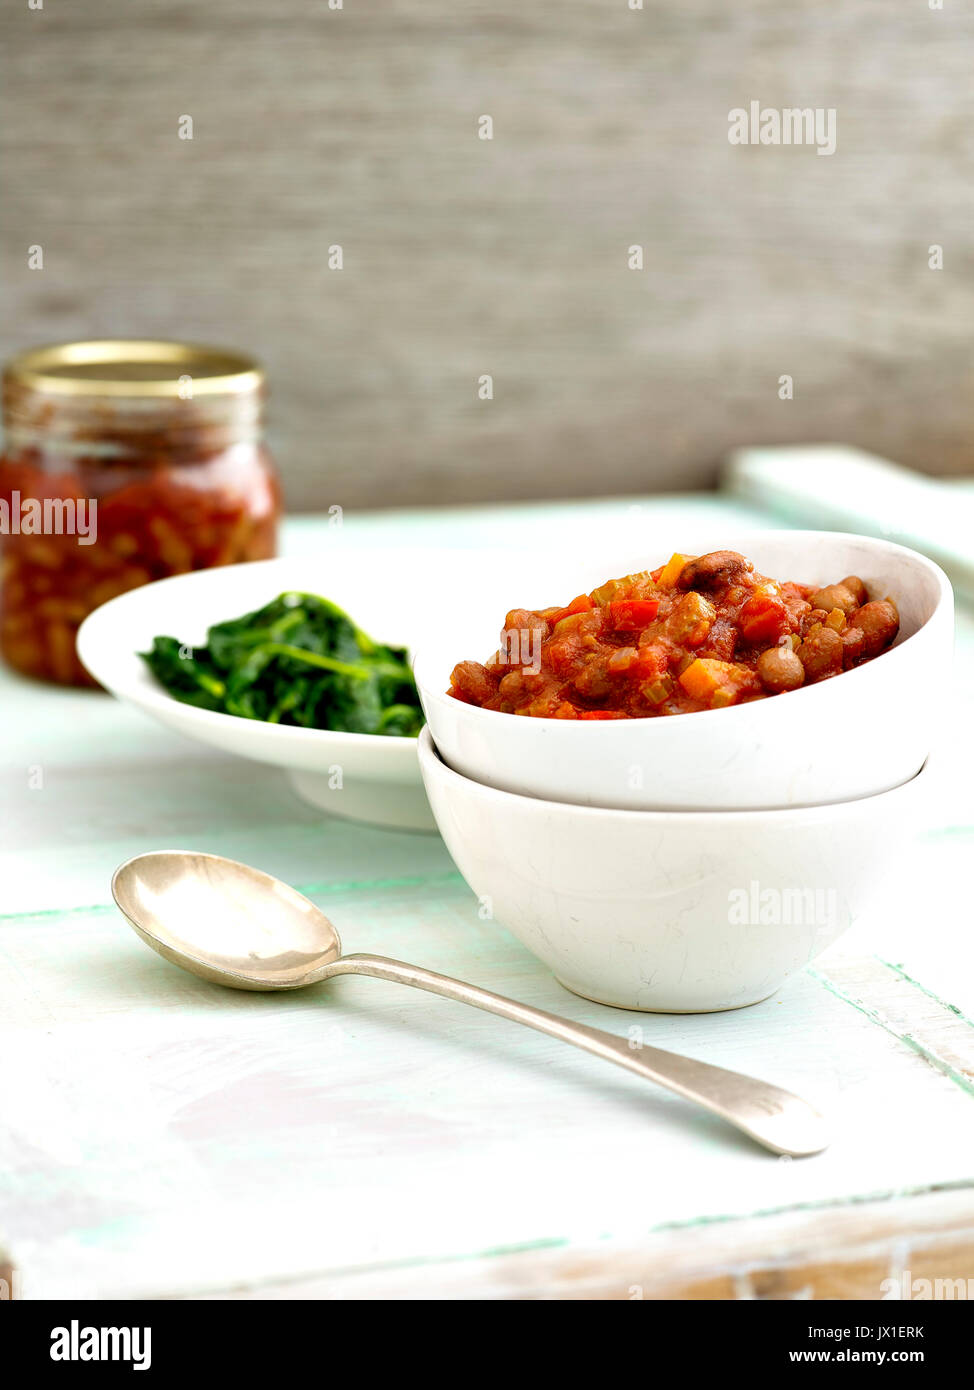 Pan marchitas la espinaca en una sartén pequeña y relish de tomate Foto de stock